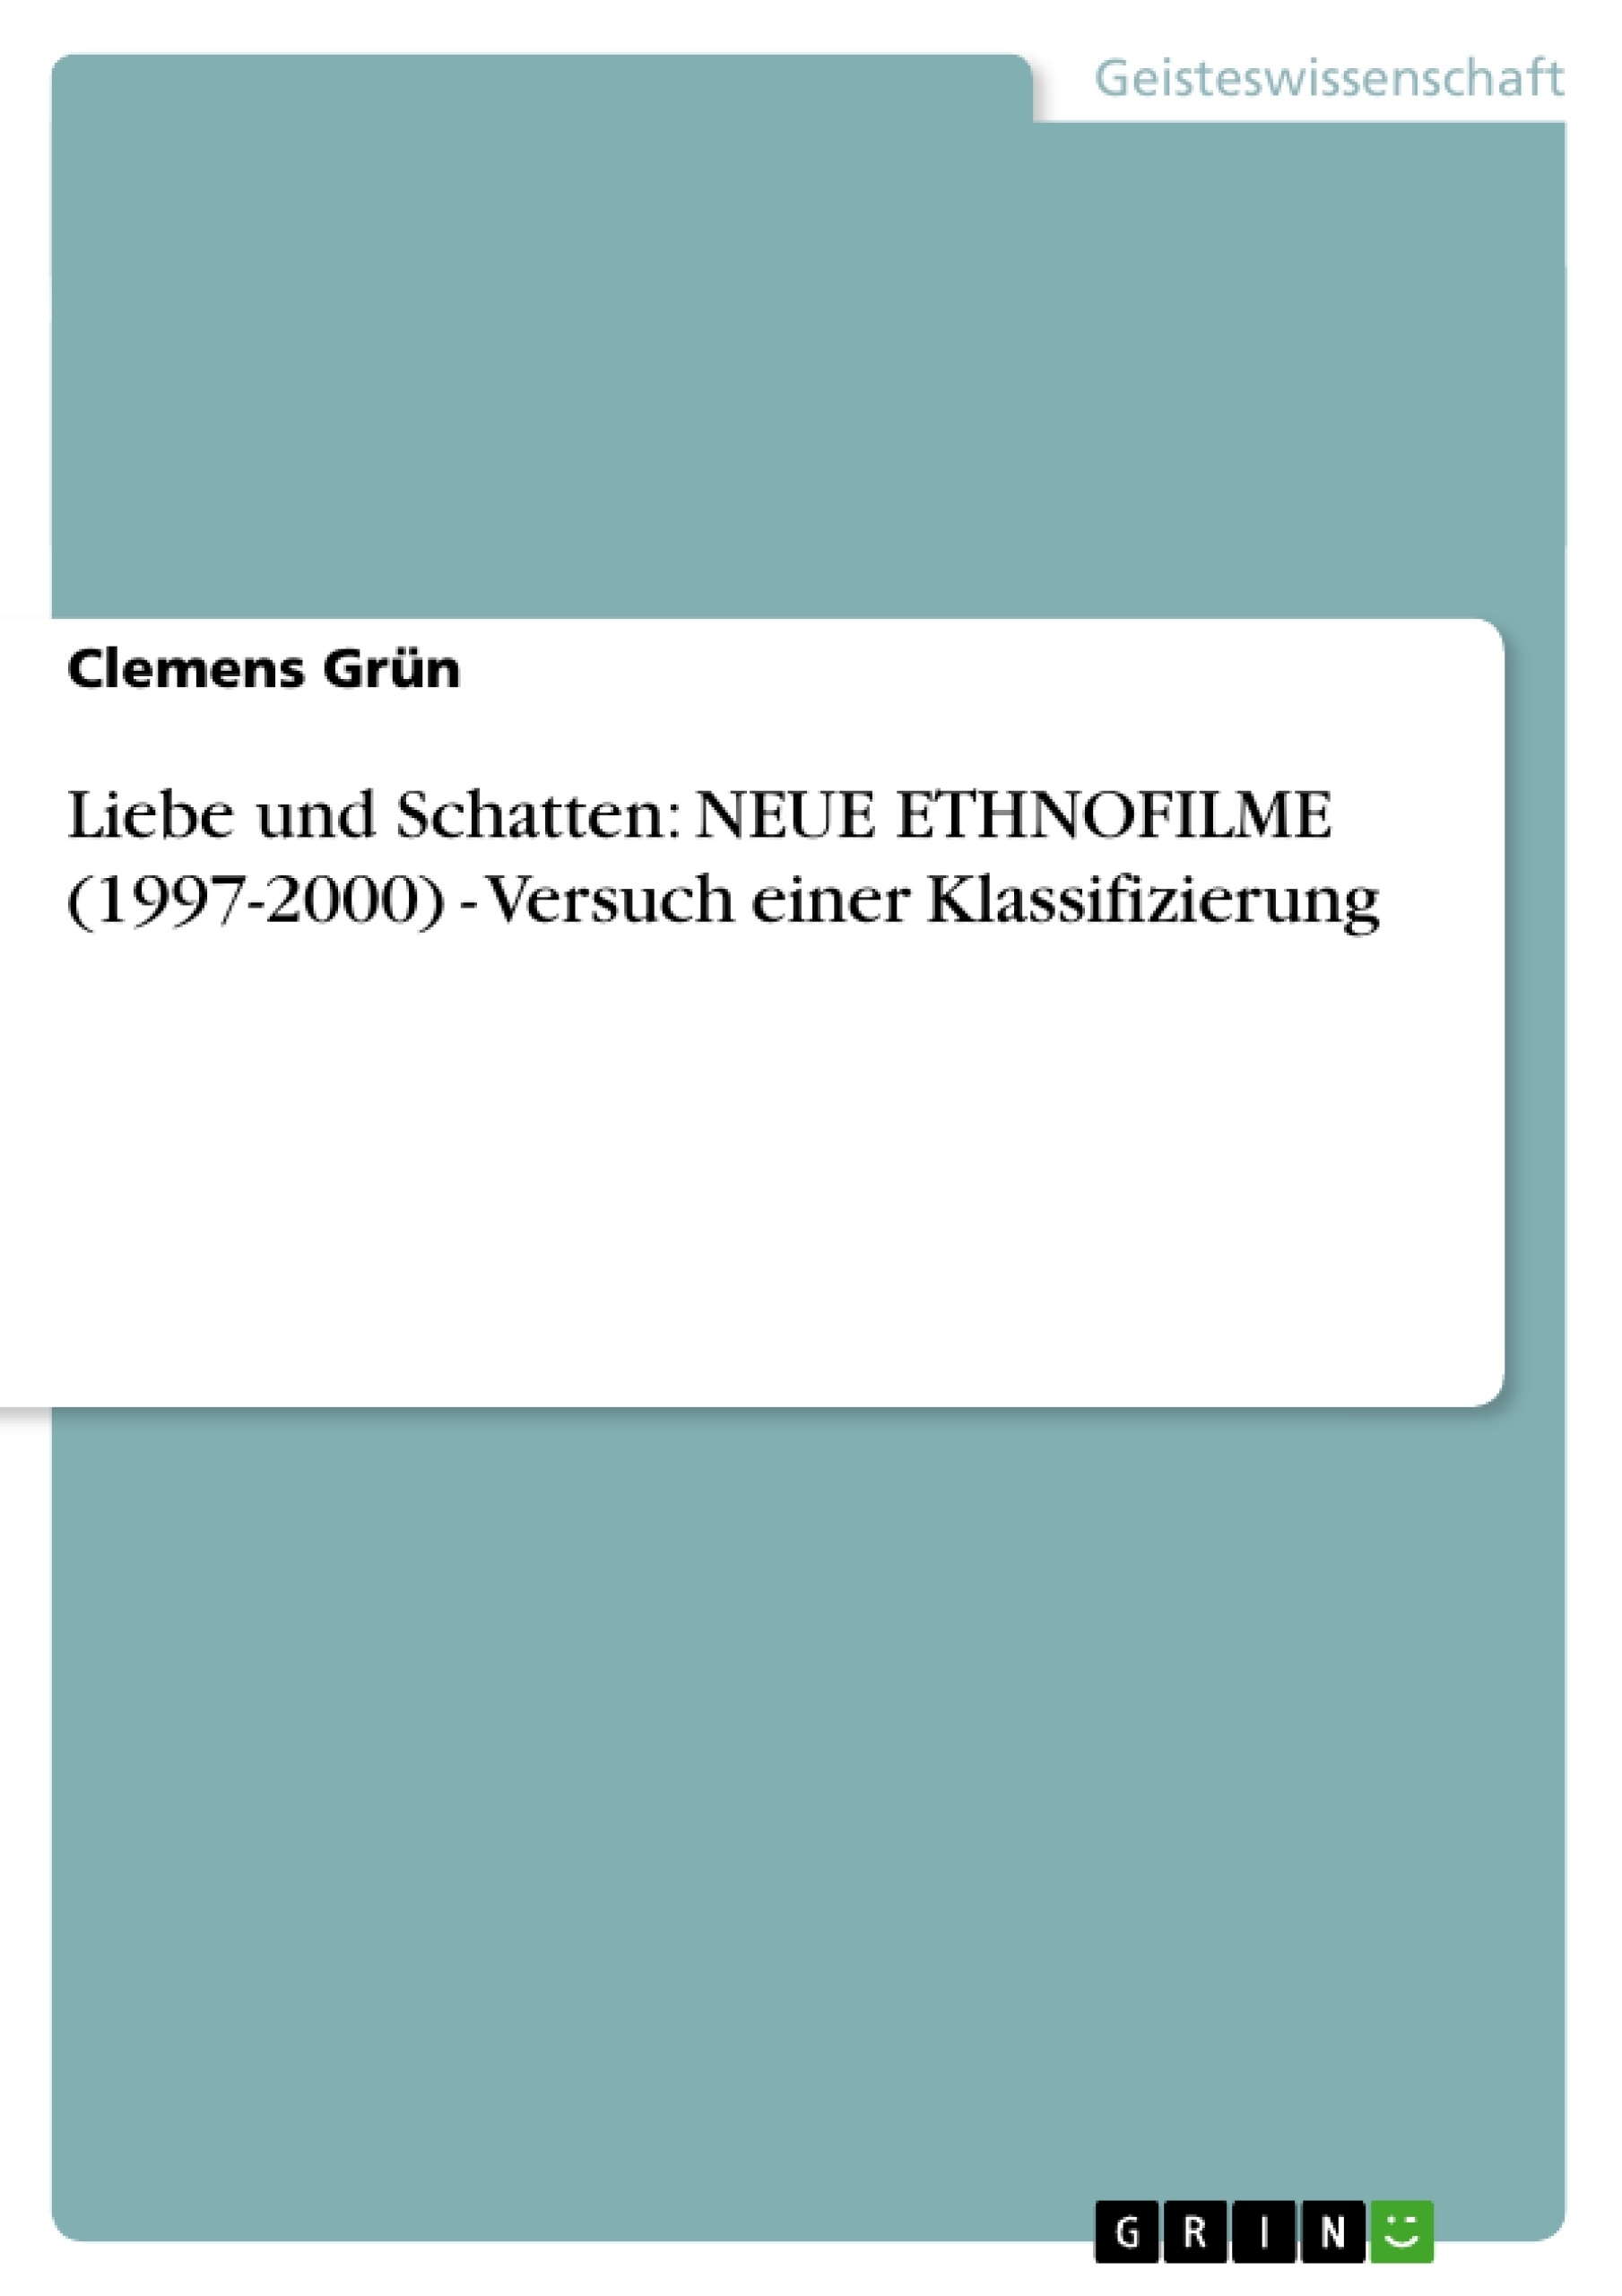 Title: Liebe und Schatten: NEUE ETHNOFILME (1997-2000) - Versuch einer Klassifizierung